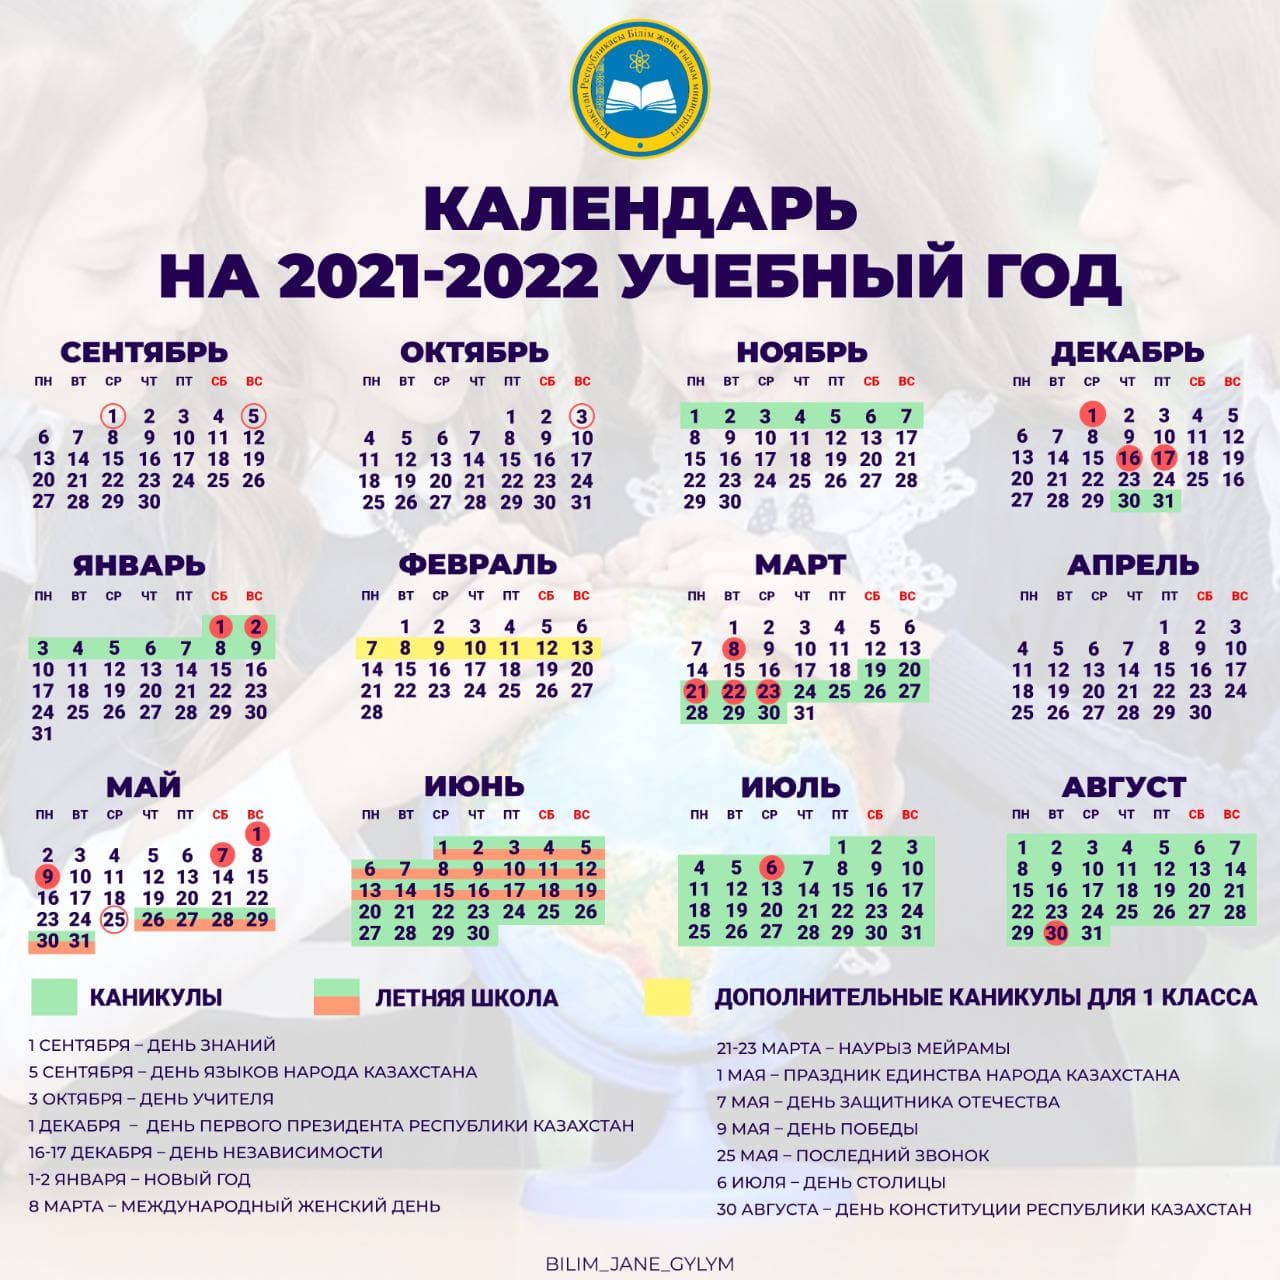 Календарь на 2021-2022 учебный год представило Минобразования